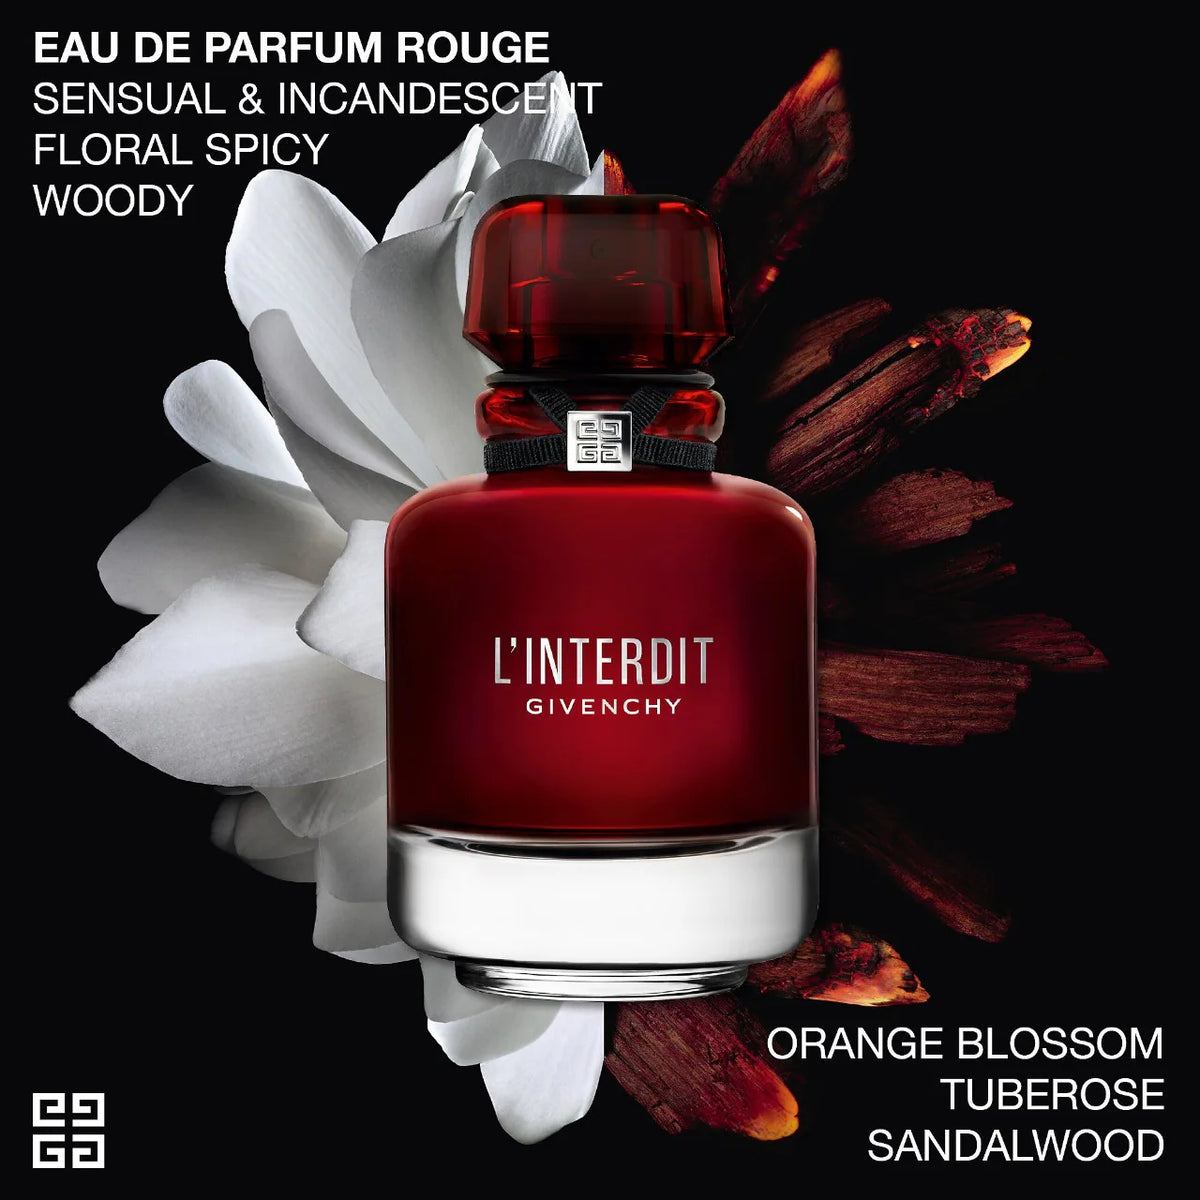 L'interdit Rouge For Women - Eau de Parfum - 80ml